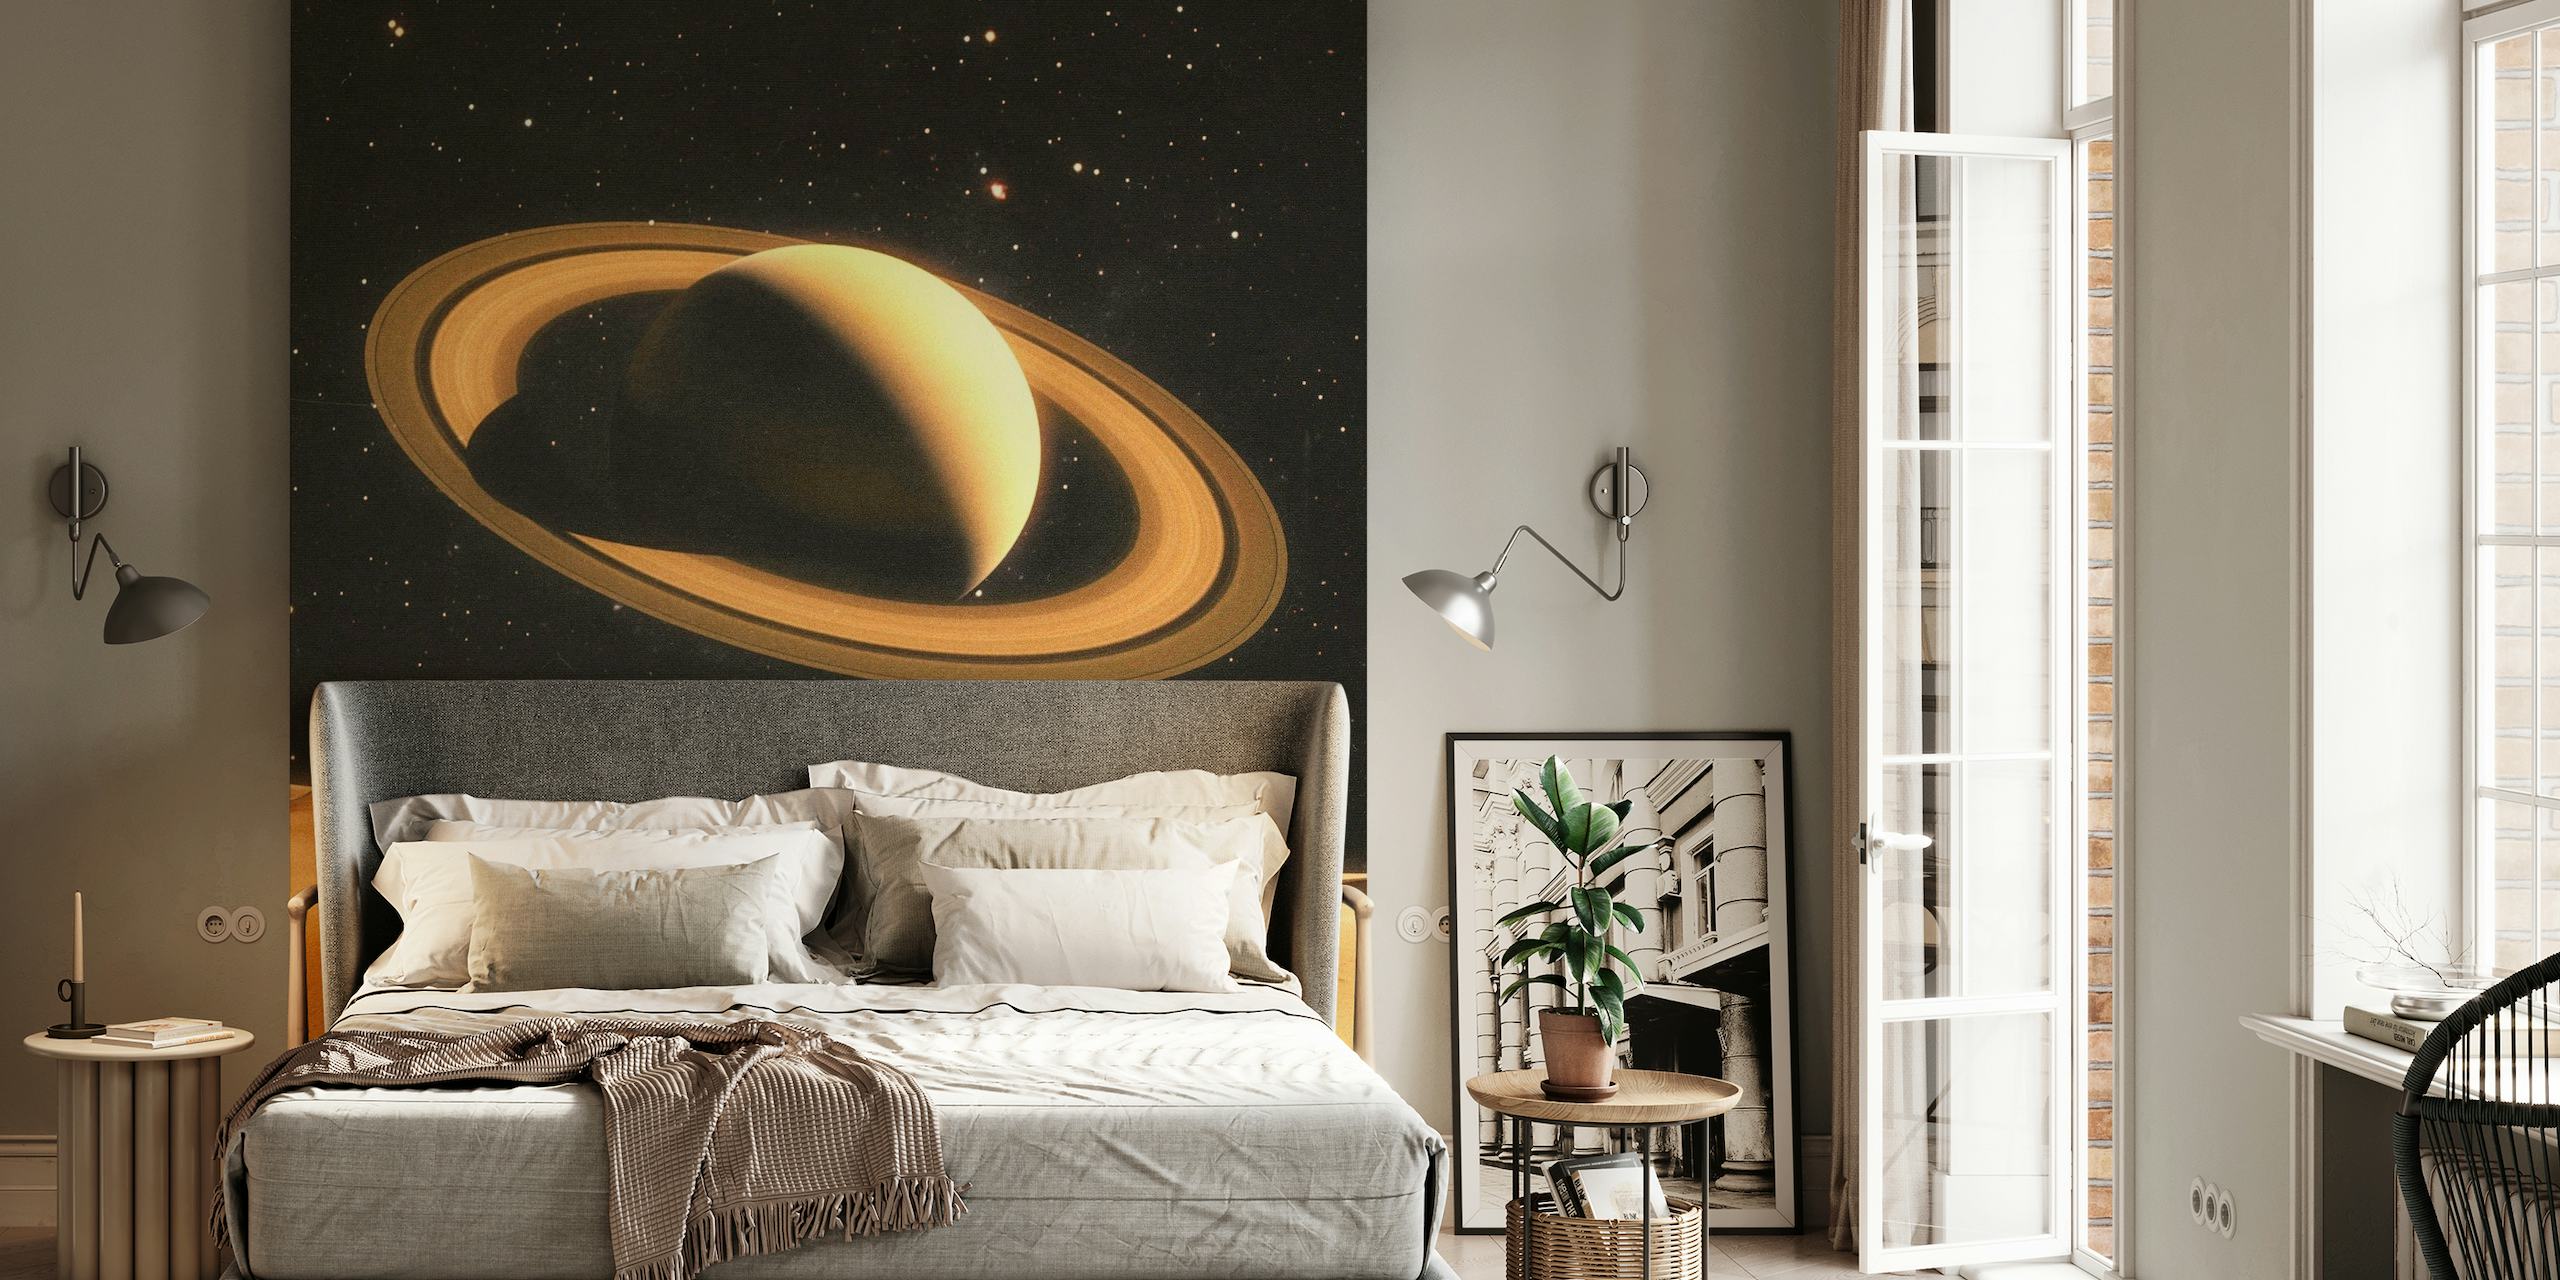 Fotobehang van twee mensen op een woestijnachtige planeet met Saturnus op de achtergrond